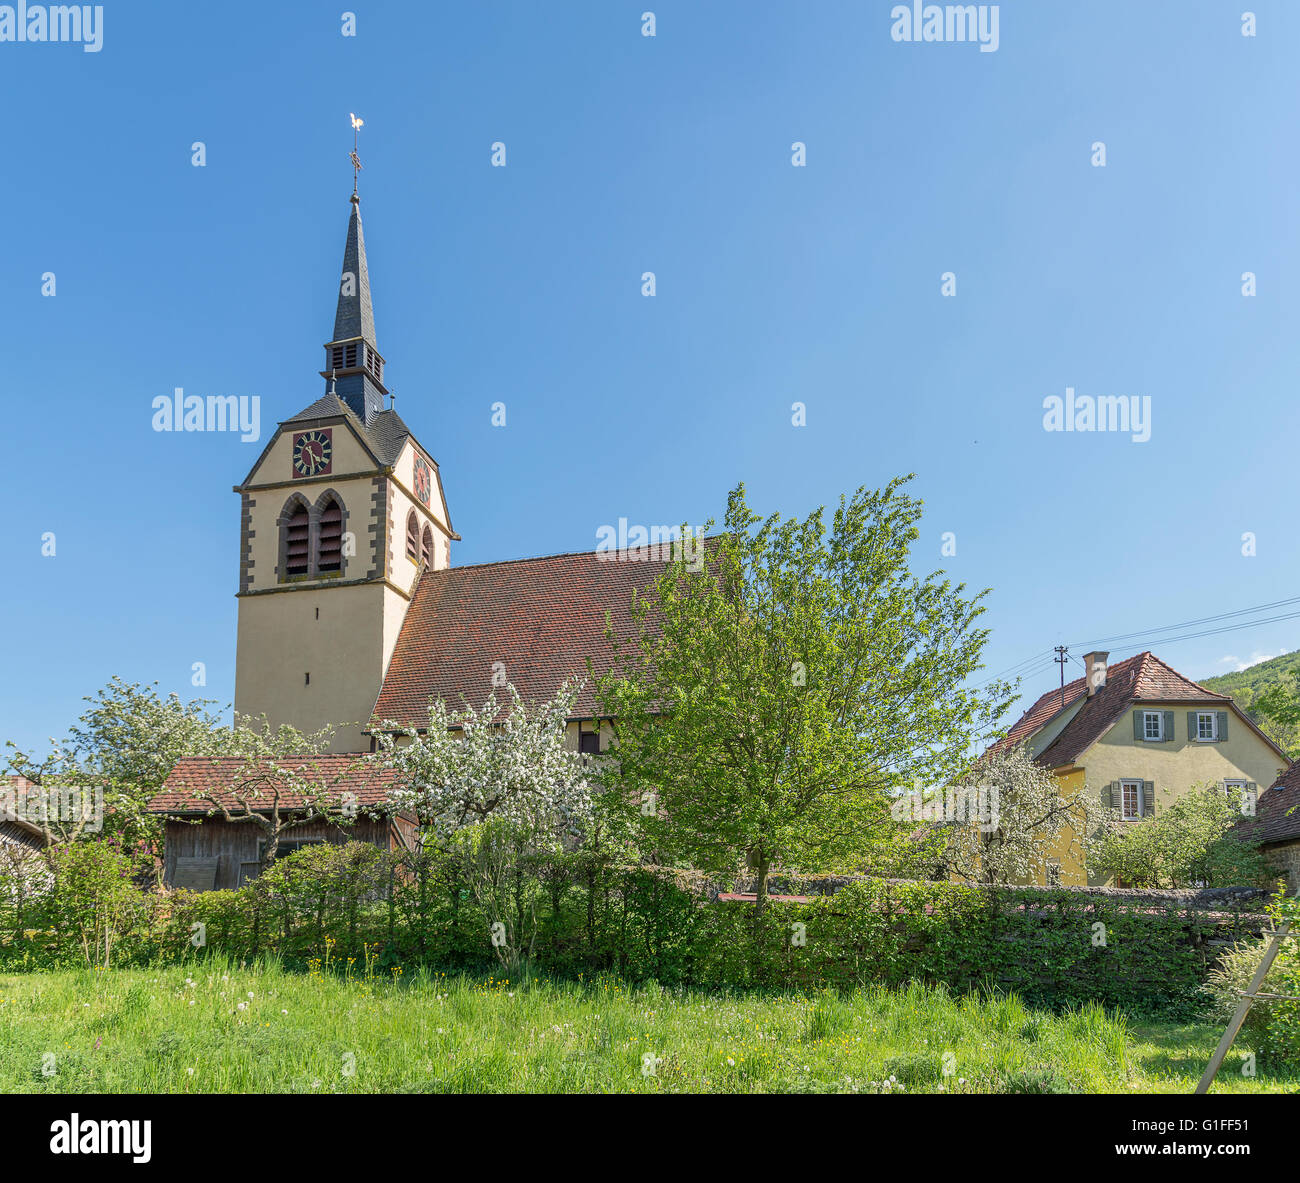 the Johanneskirche at a village in Hohenlohe named Baechlingen Stock Photo